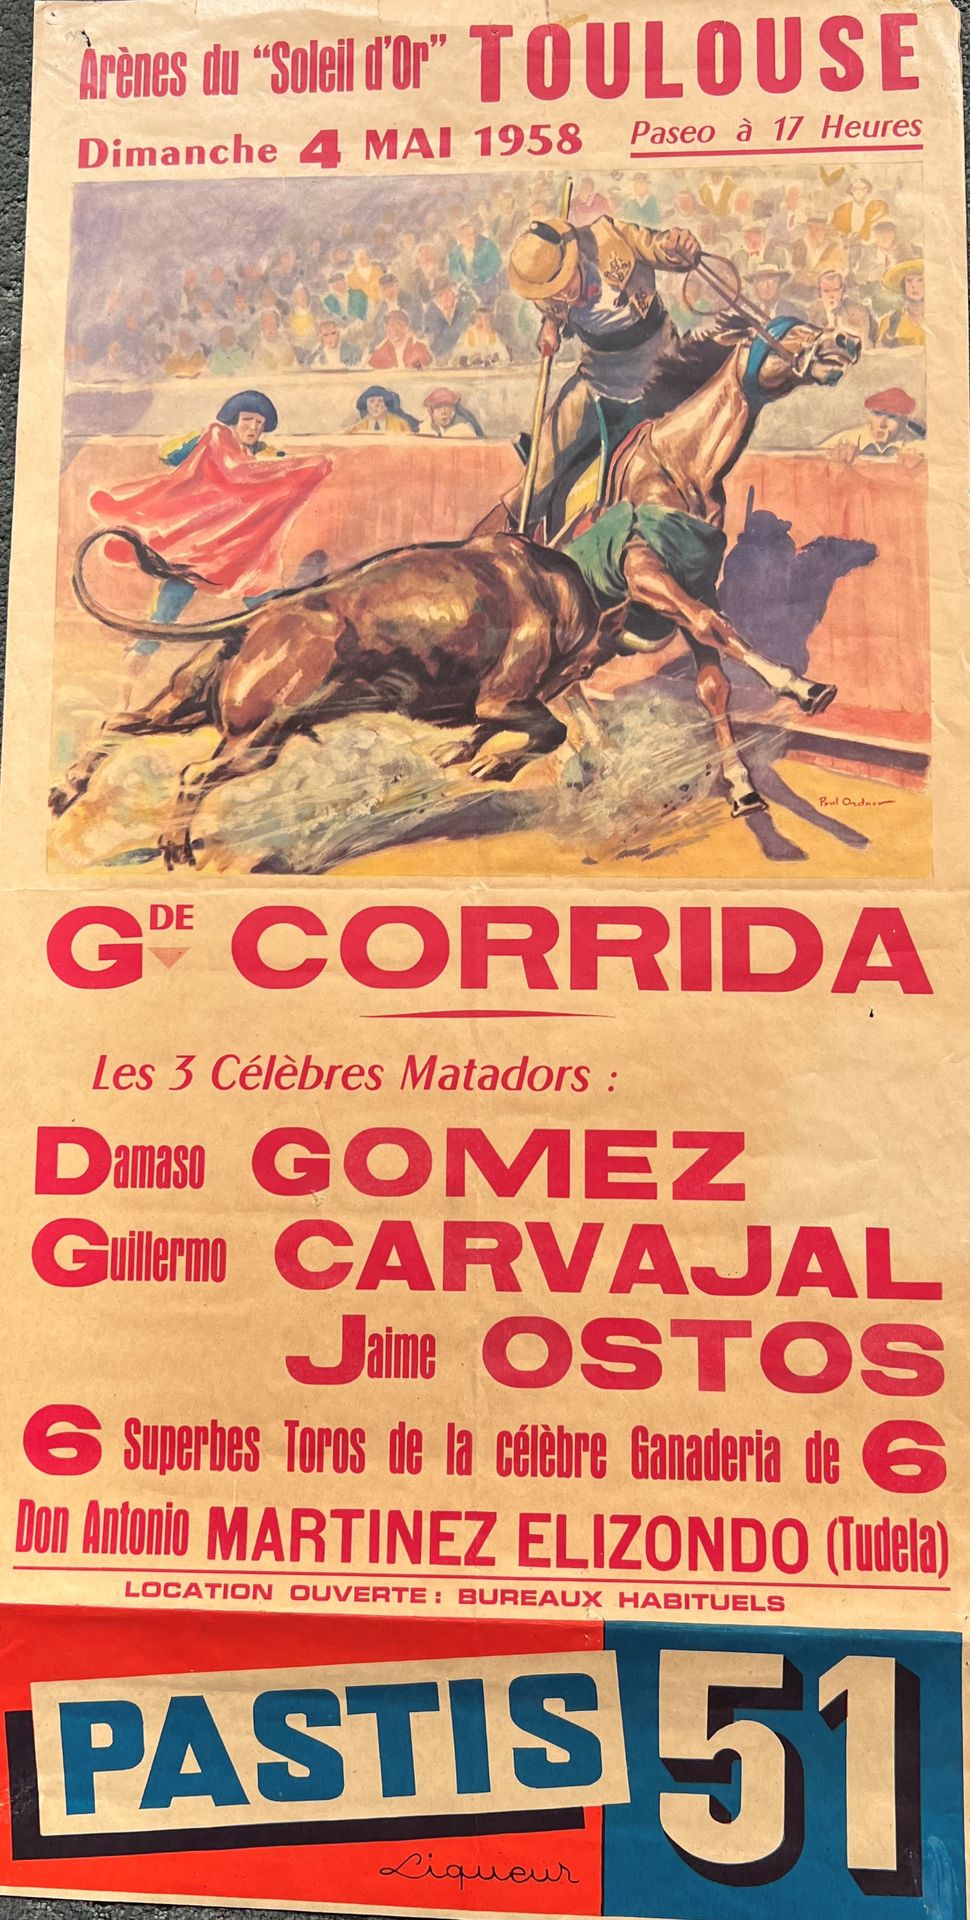 Null CORRIDA

"Grande CORRIDA" aux arènes du Soleil d'or de Toulouse, 1958

Affi&hellip;